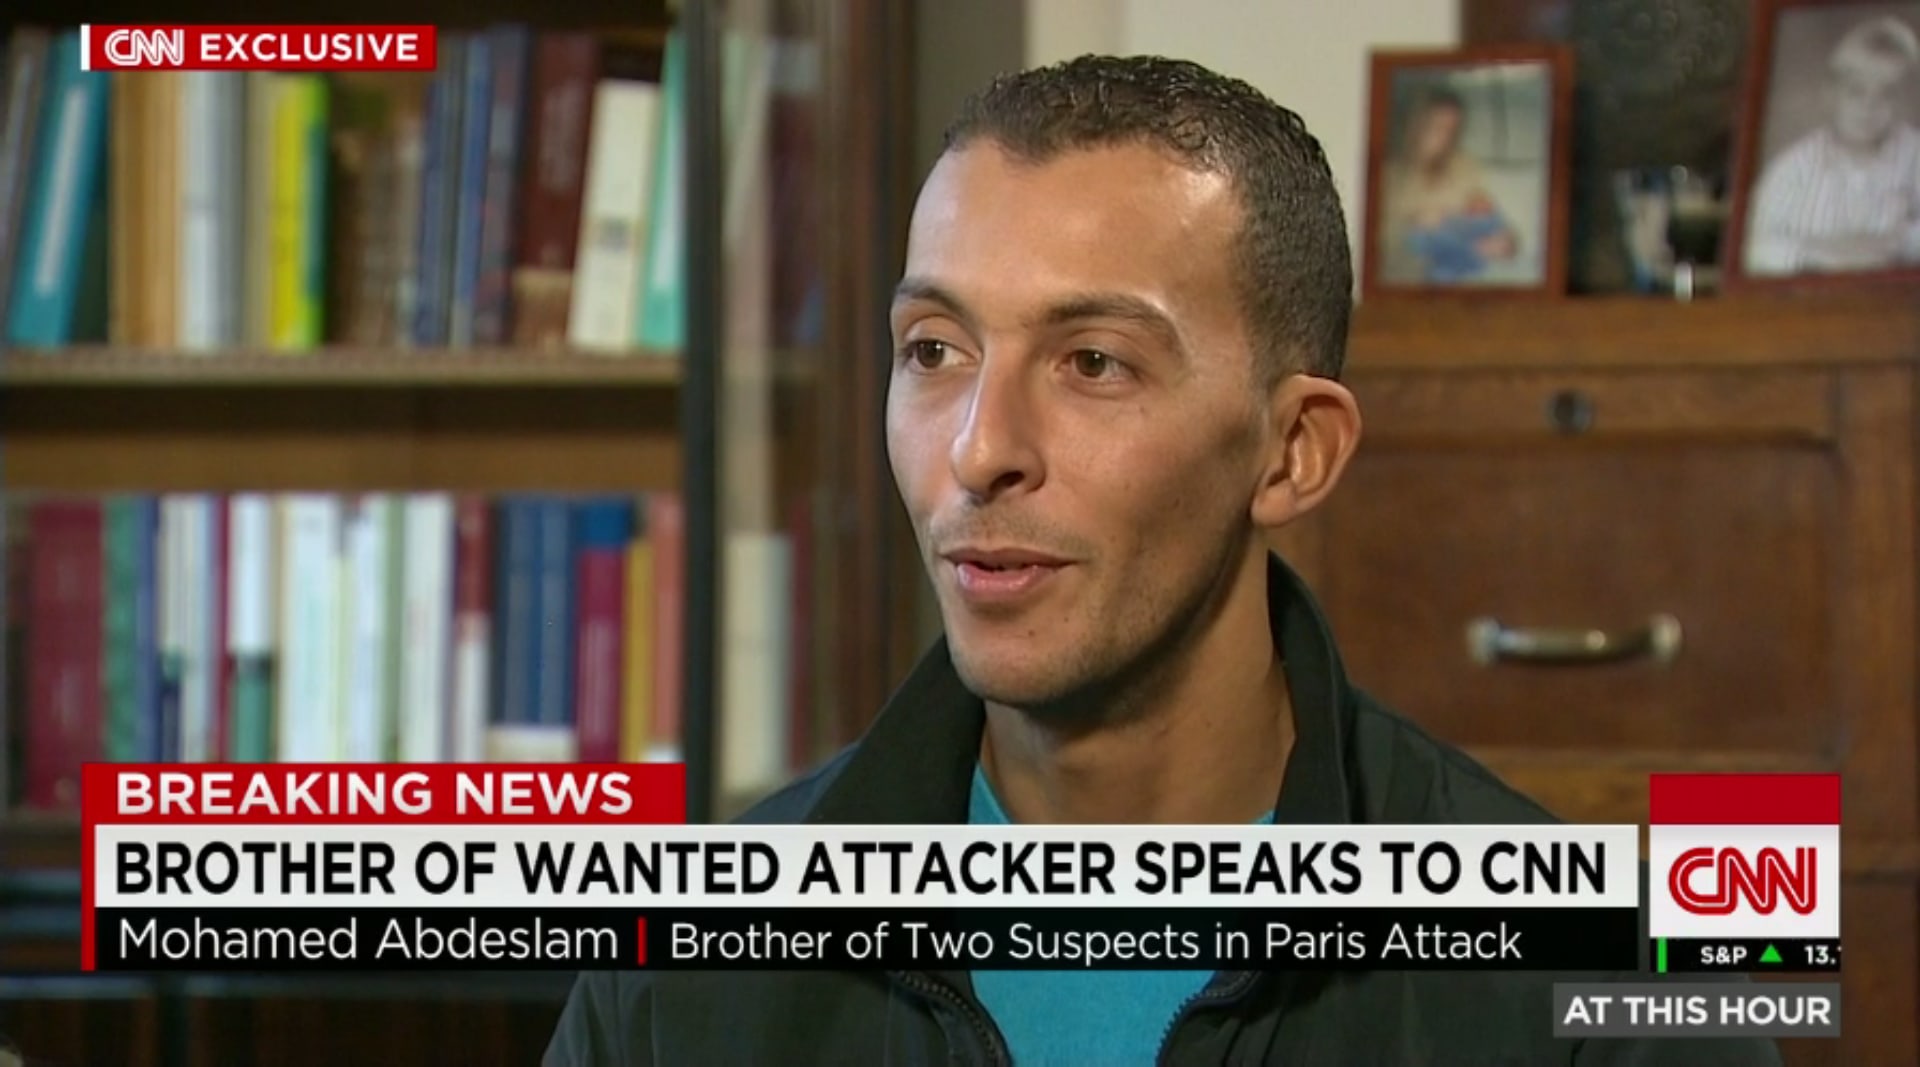 شقيق صلاح عبدالسلام المشتبه به في هجمات باريس: أعتقد أنه غير رأيه في اللحظة الأخيرة